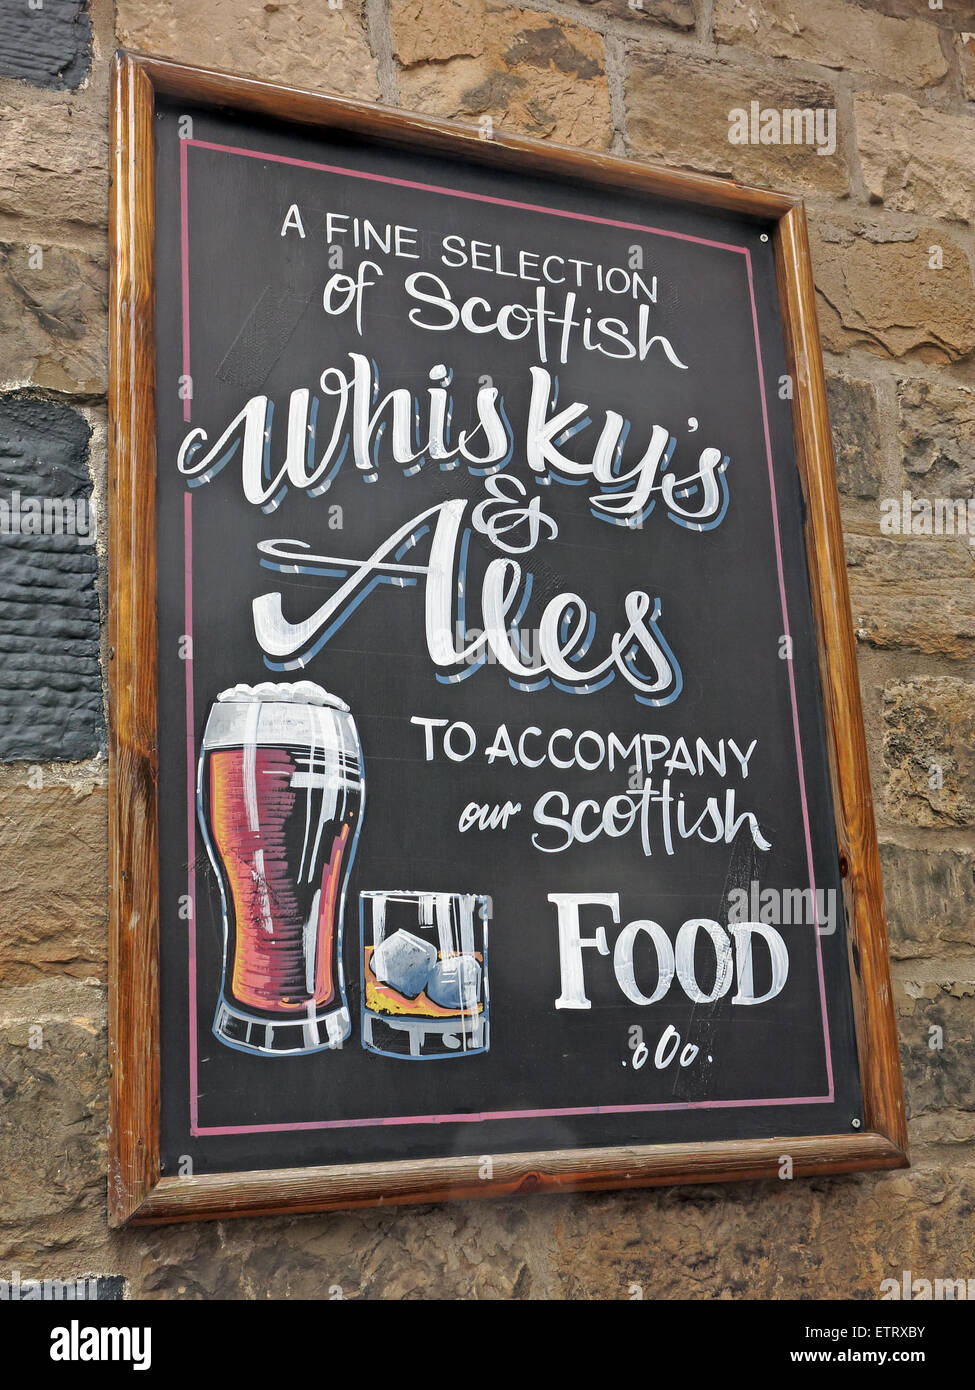 Zeichen, eine feine Auswahl an schottischen Whiskys & Ales begleiten unsere schottische Küche Stockfoto